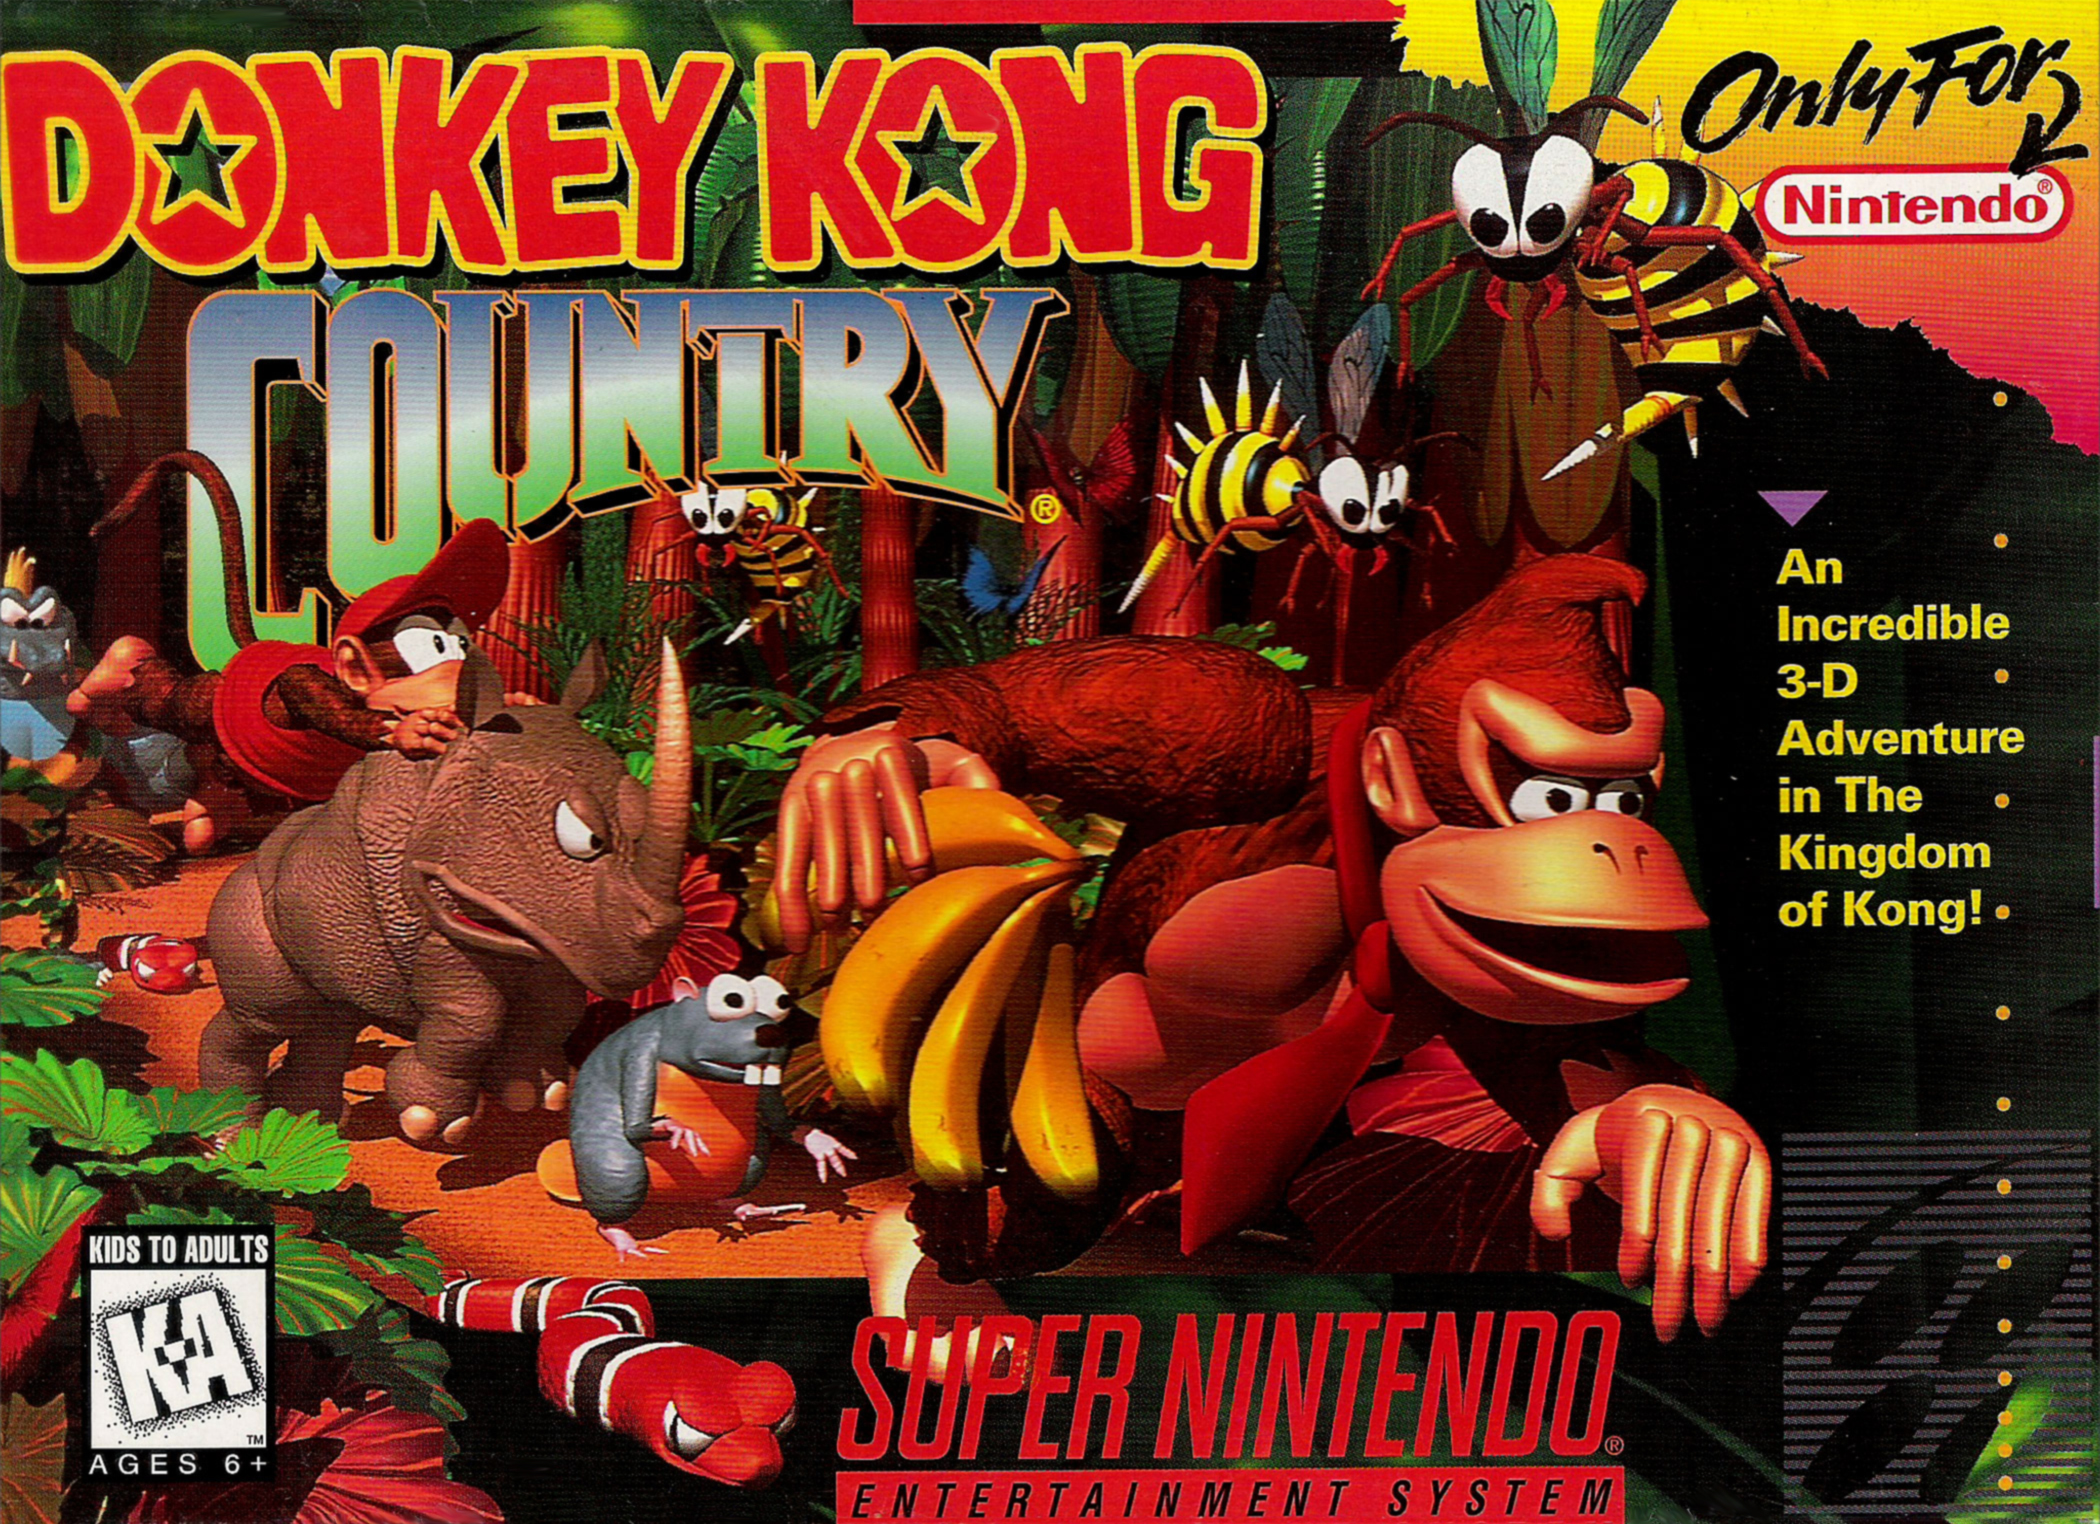 Donkey Kong Country - Wikipedia